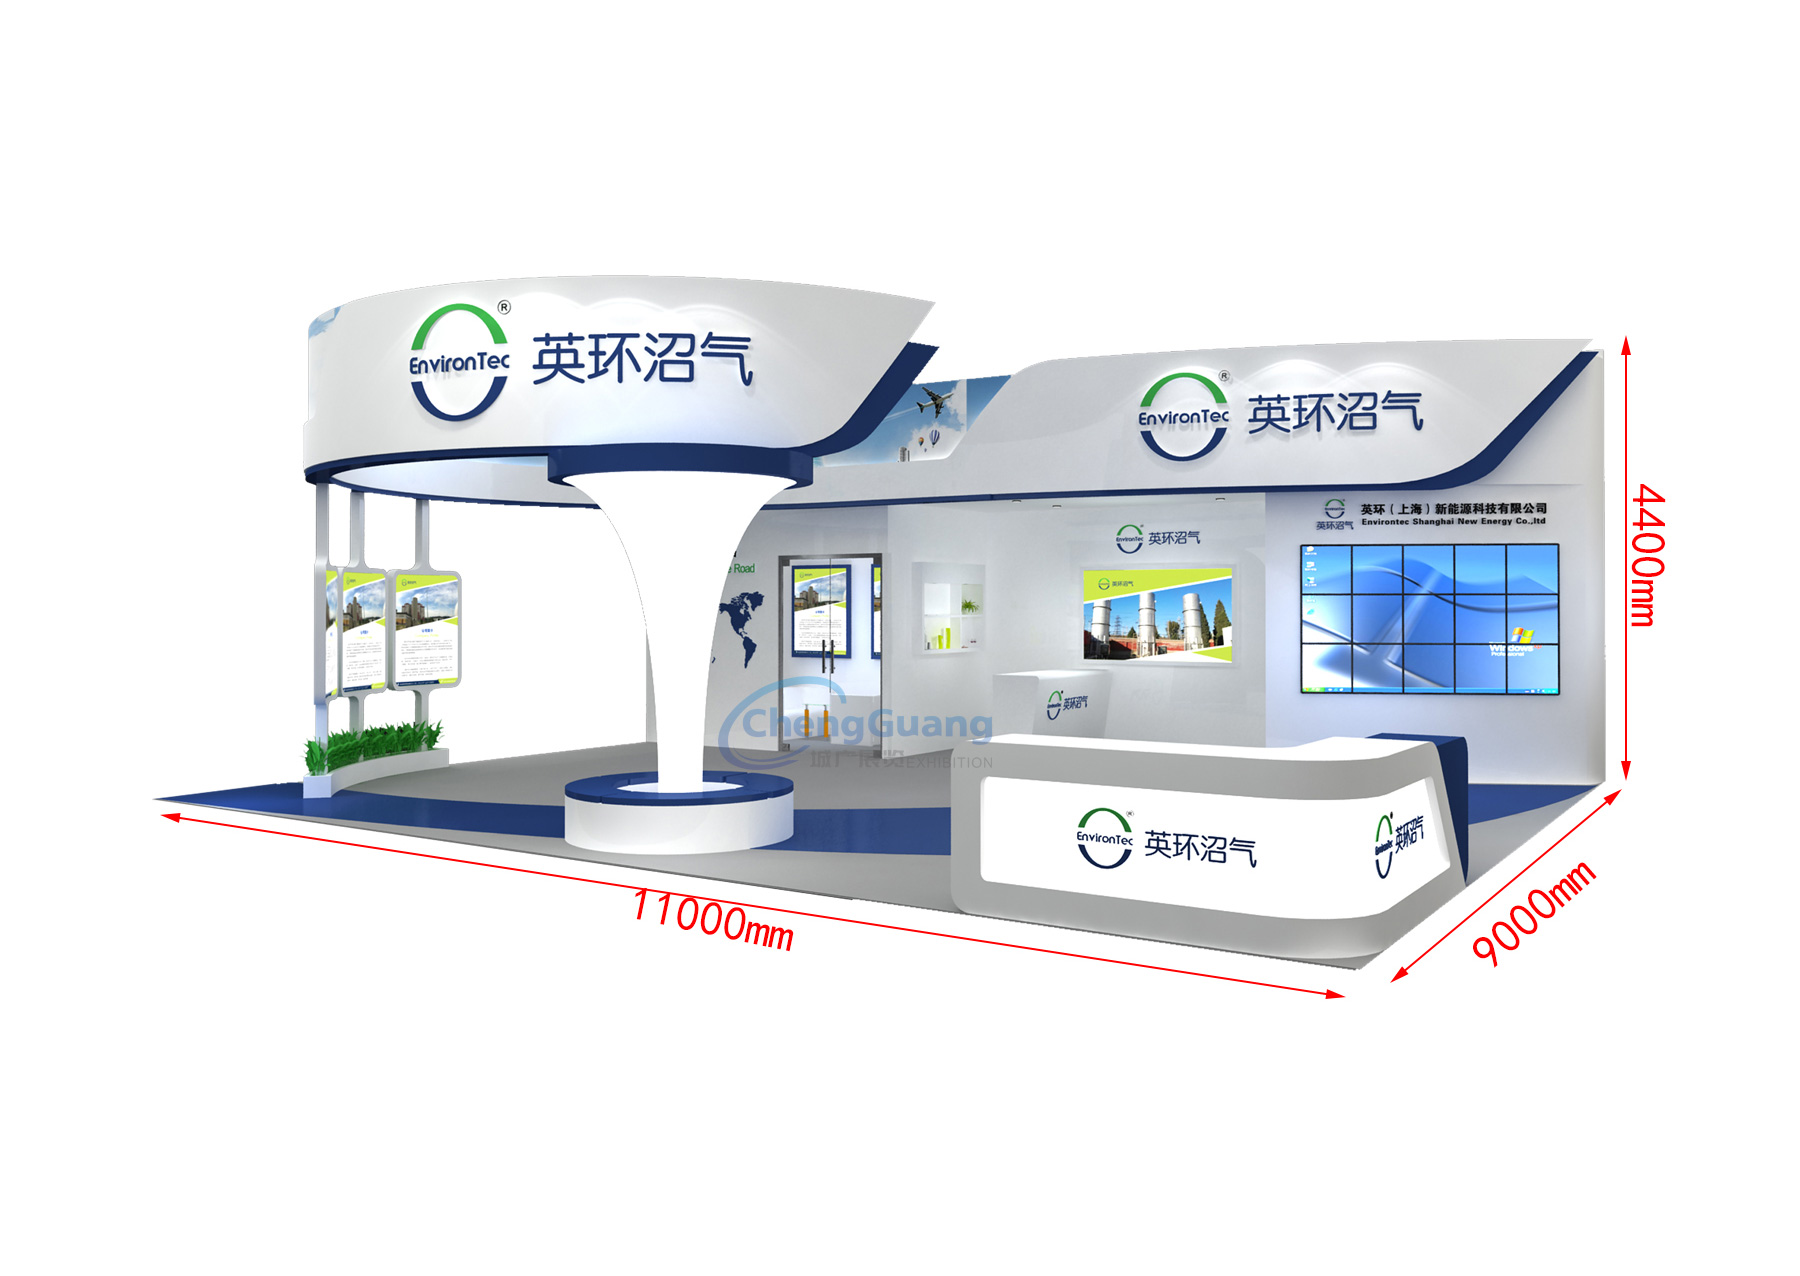 英环（上海）新能源科技有限公司